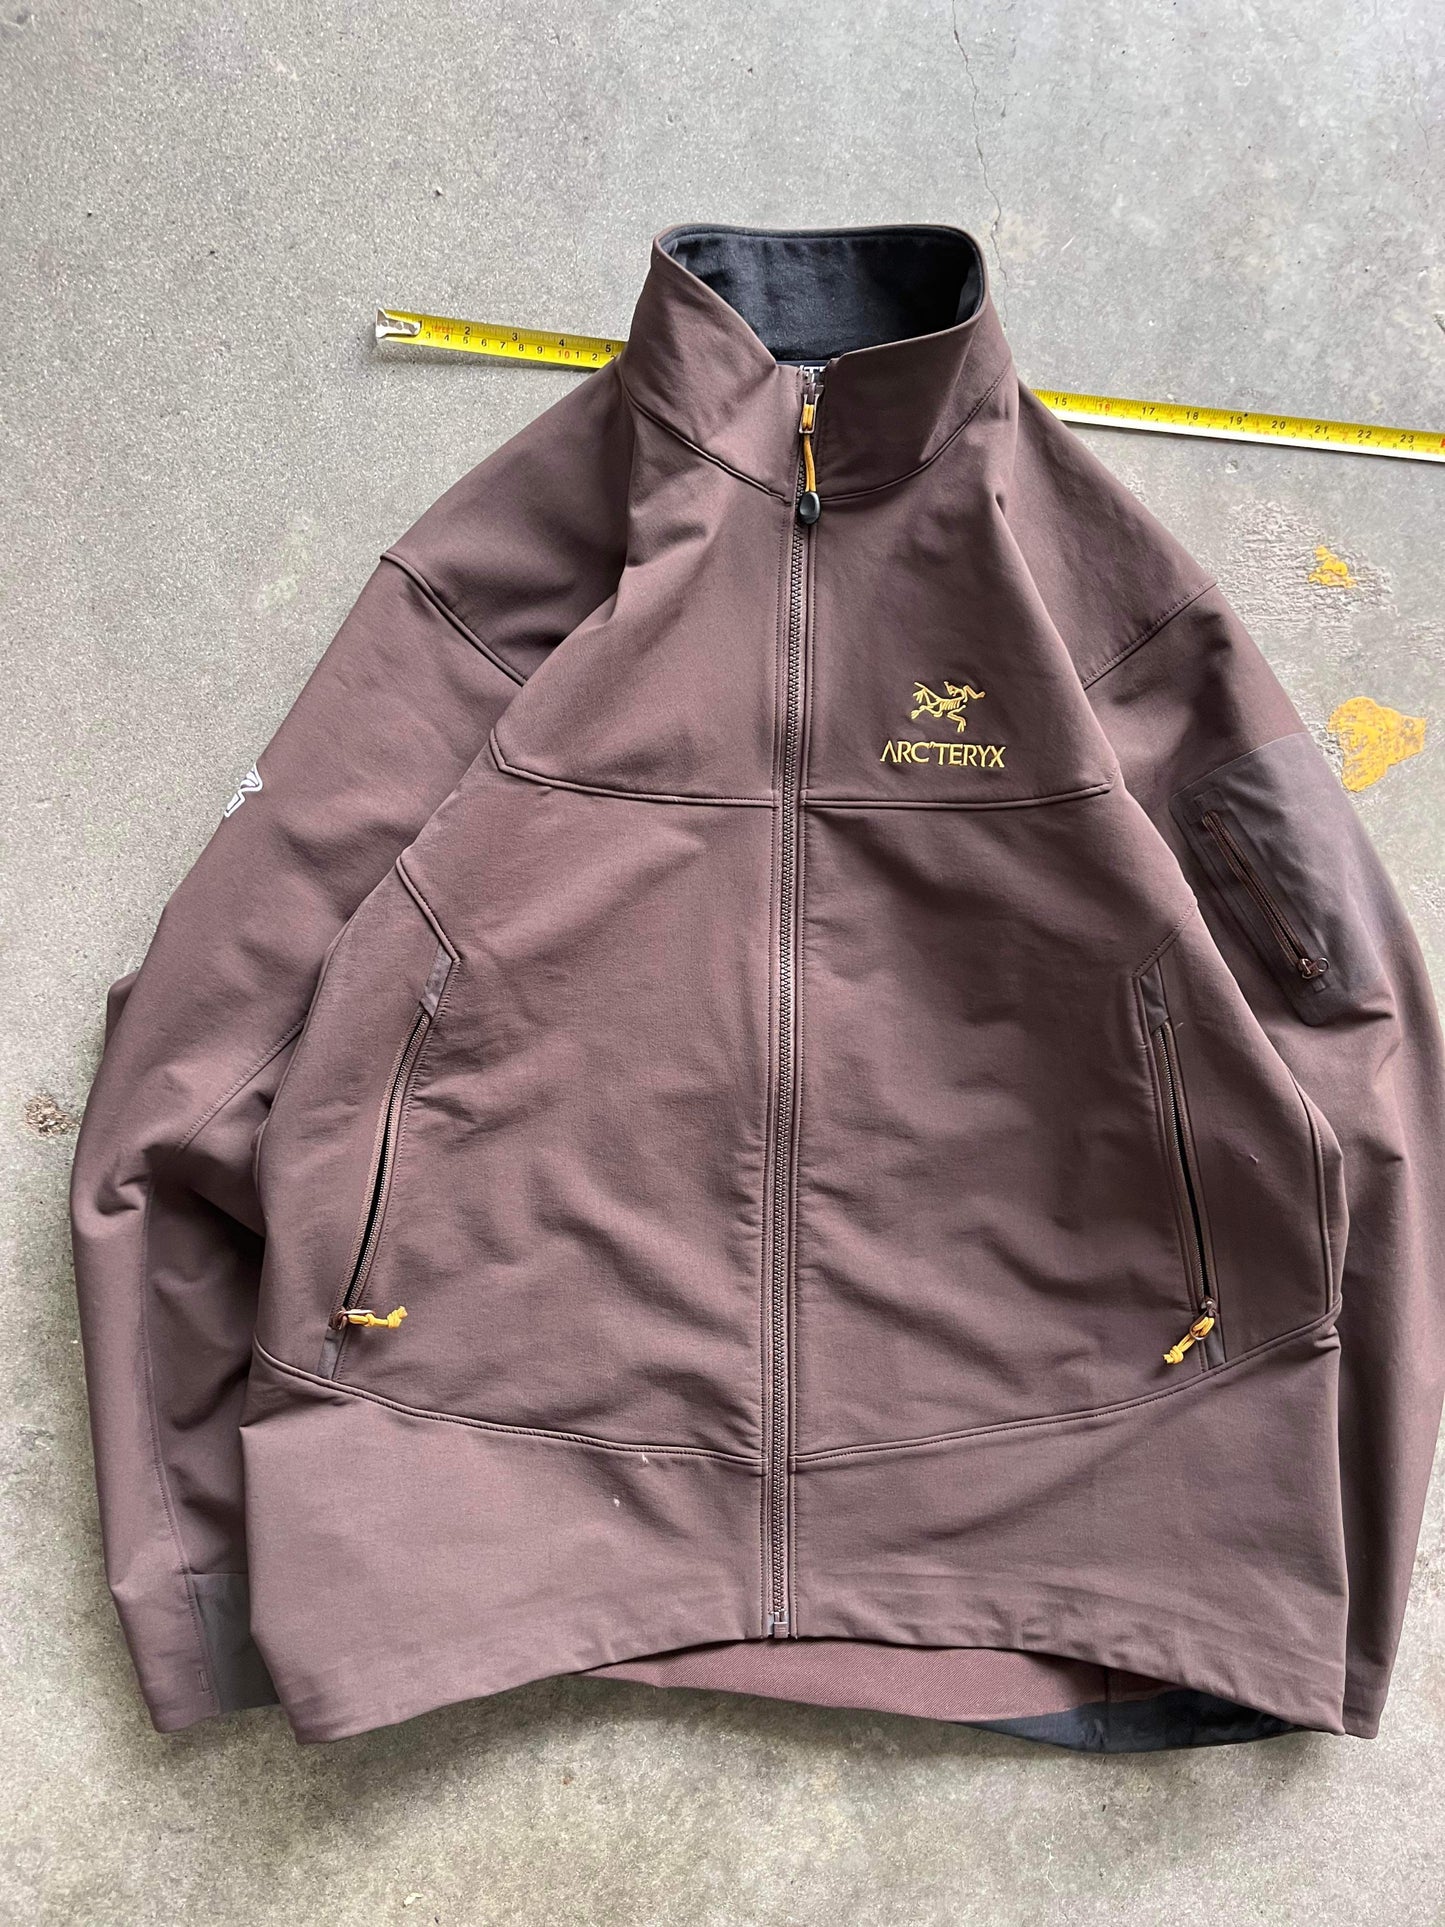 (XL) Arcteryx Gamma Softshell Jacket